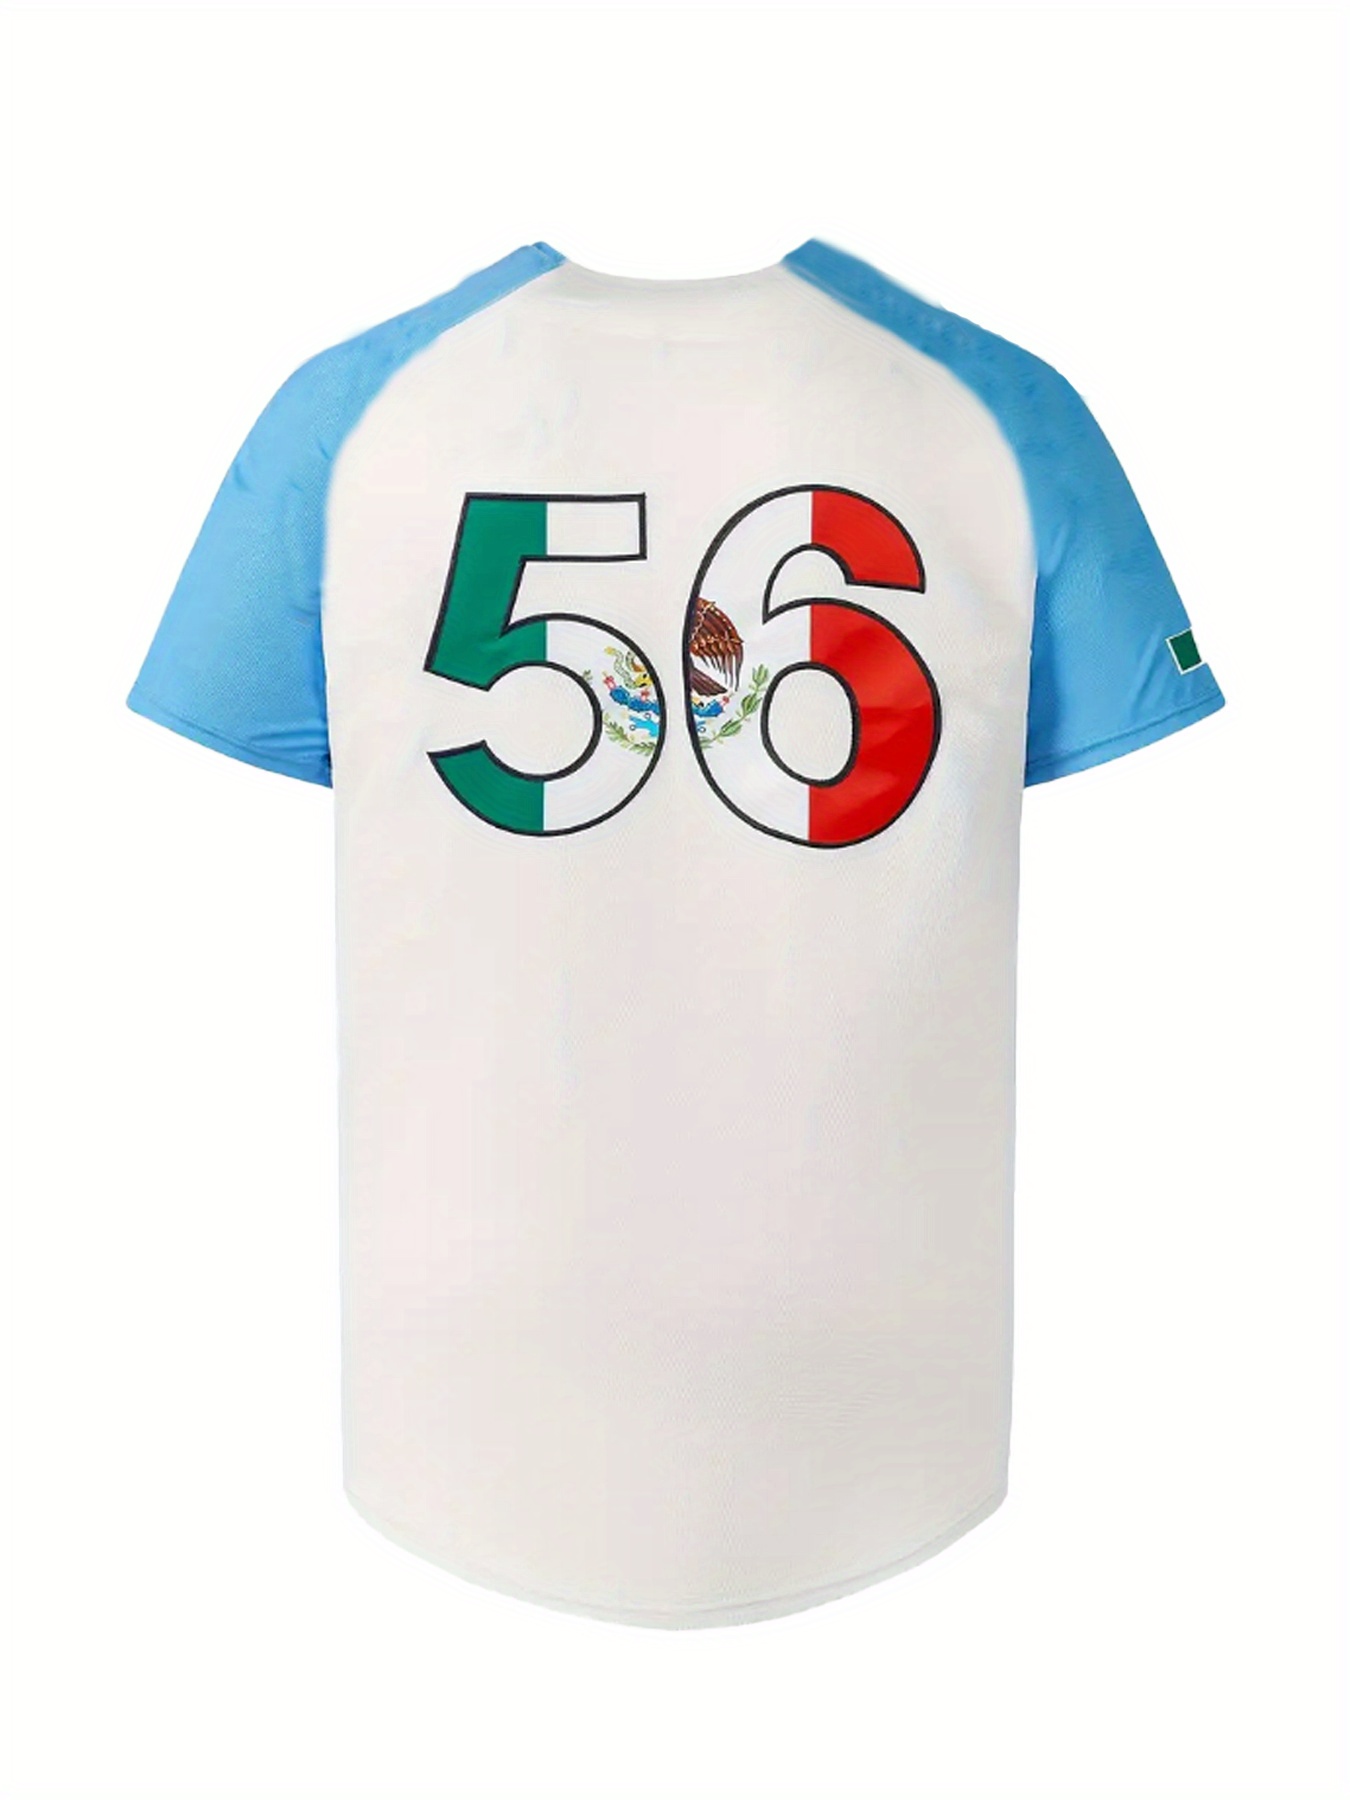 Camisa De Beisebol Masculina Com Design Clássico MEXICO #56, Camisa De  Beisebol Retrô, Bordado Levemente Elástico E Respirável Com Botões,  Uniforme